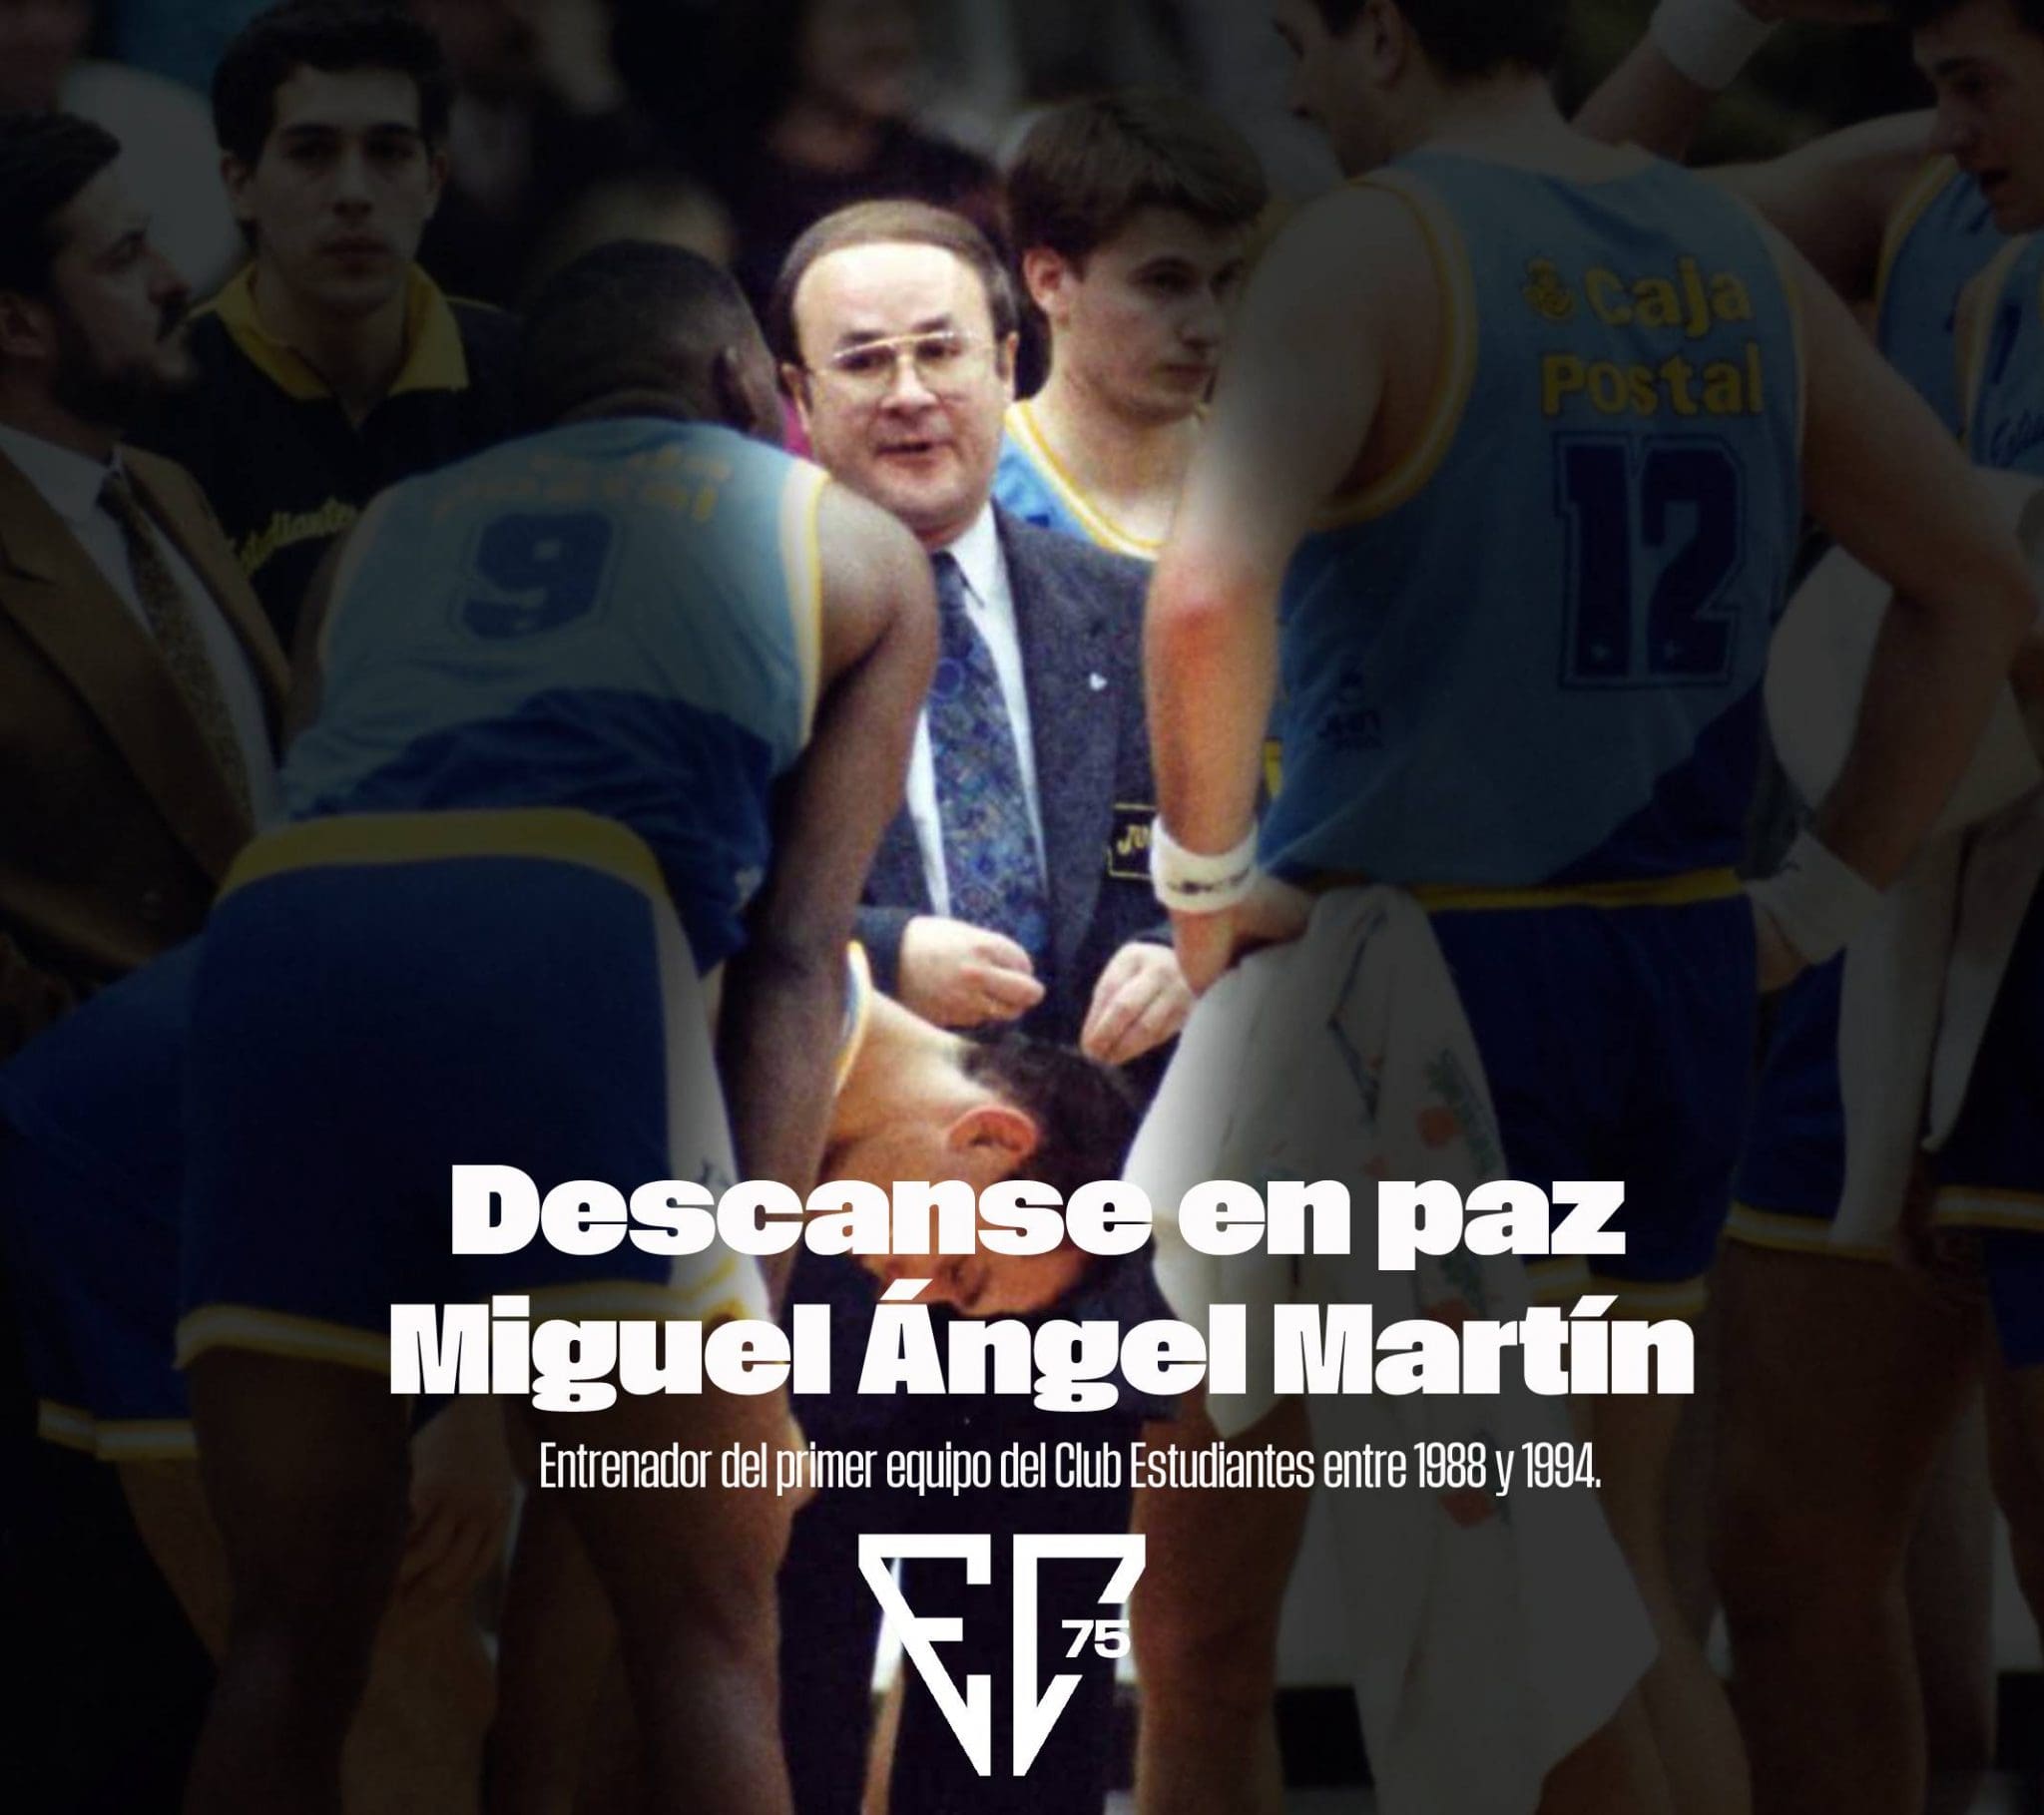 Descanse en paz Miguel Ángel Martín, uno de los grandes entrenadores de nuestra historia